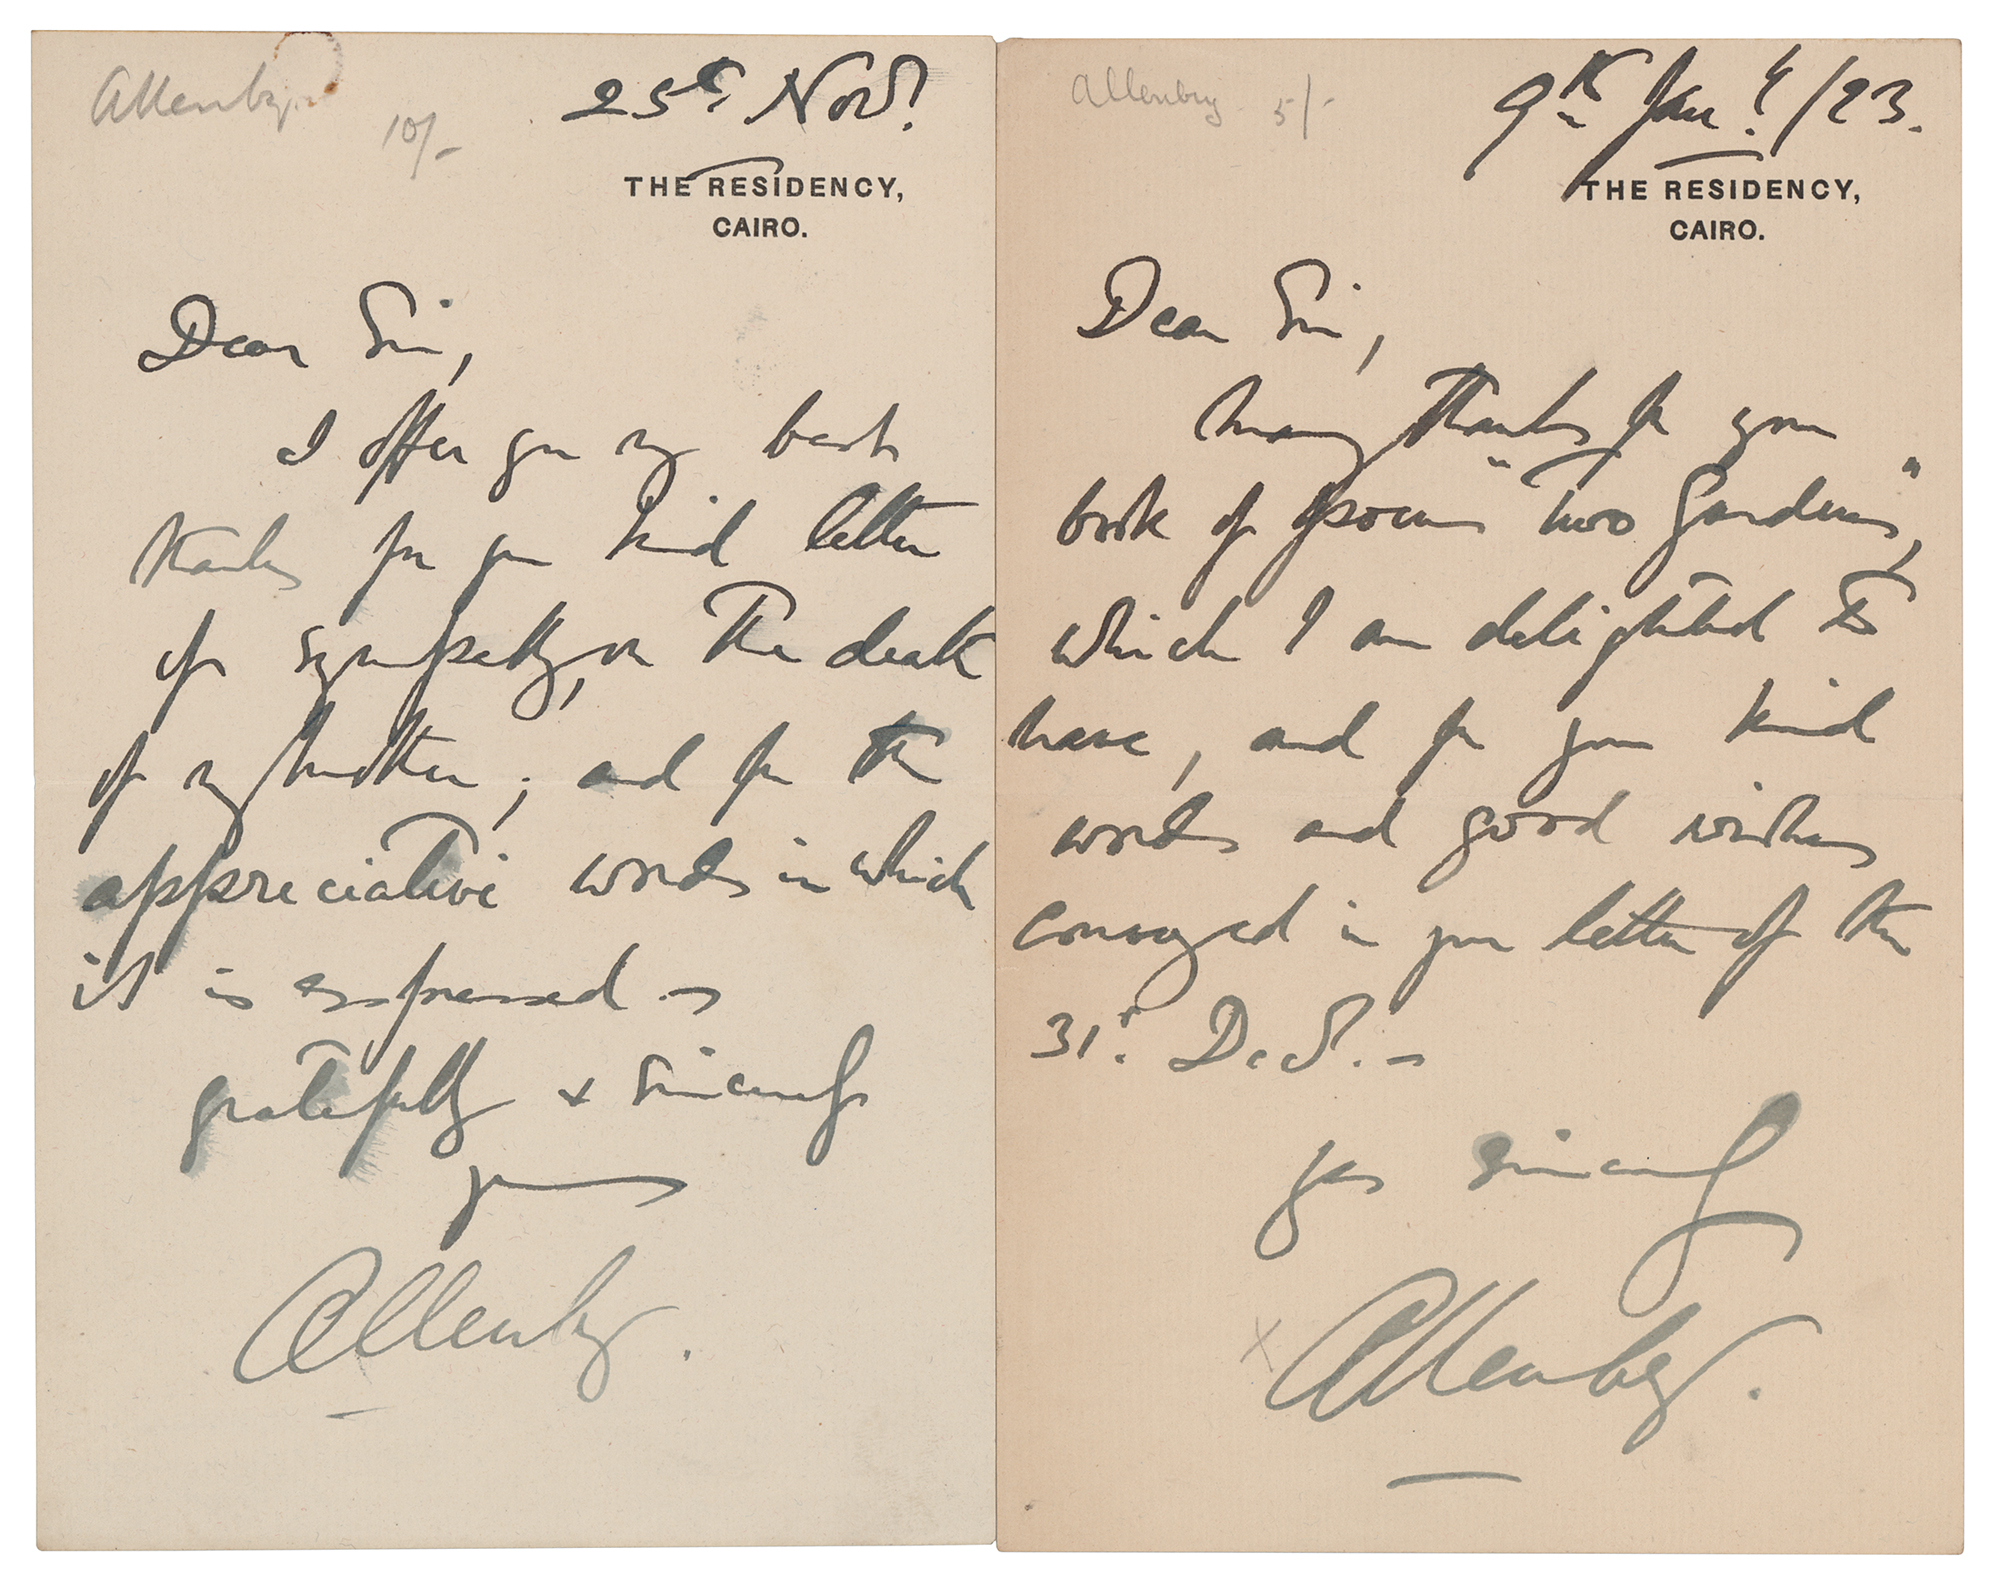 Lot #274 Edmund Allenby (2) Autograph Letters Signed